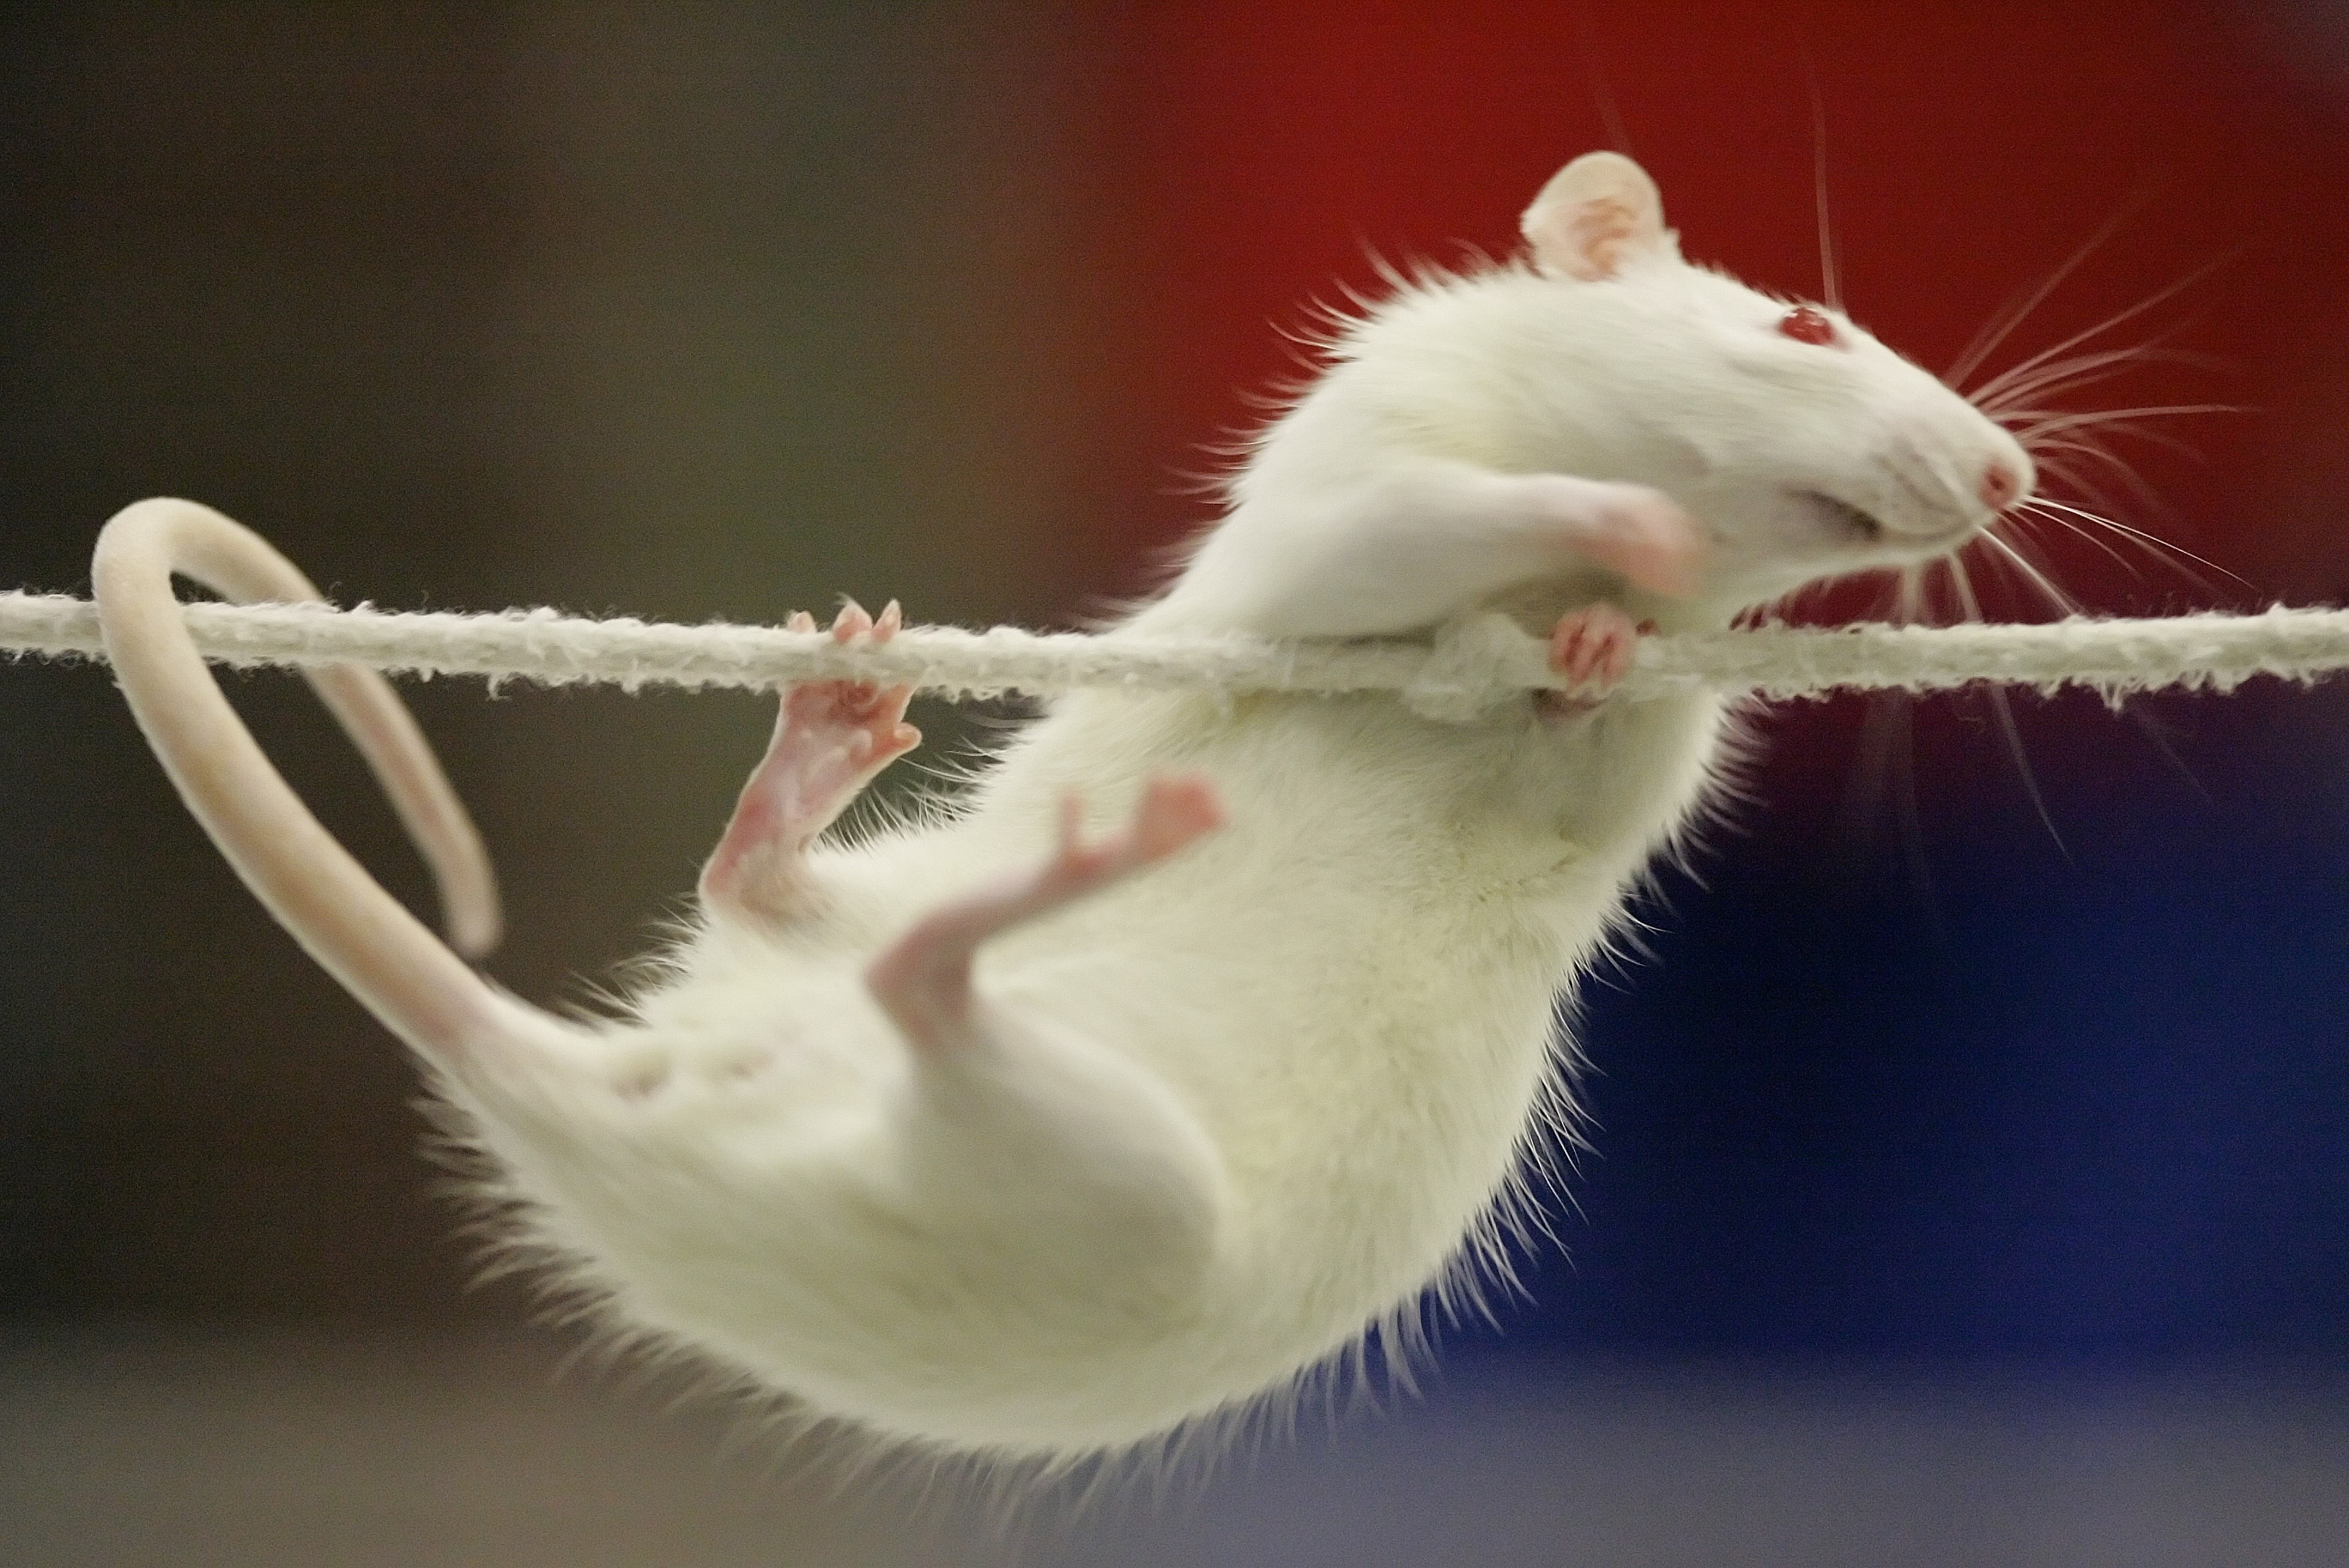 Monsterråttan är fortfarande på fri fot. Råttan på bilden har ingen koppling till råttan i artikeln.